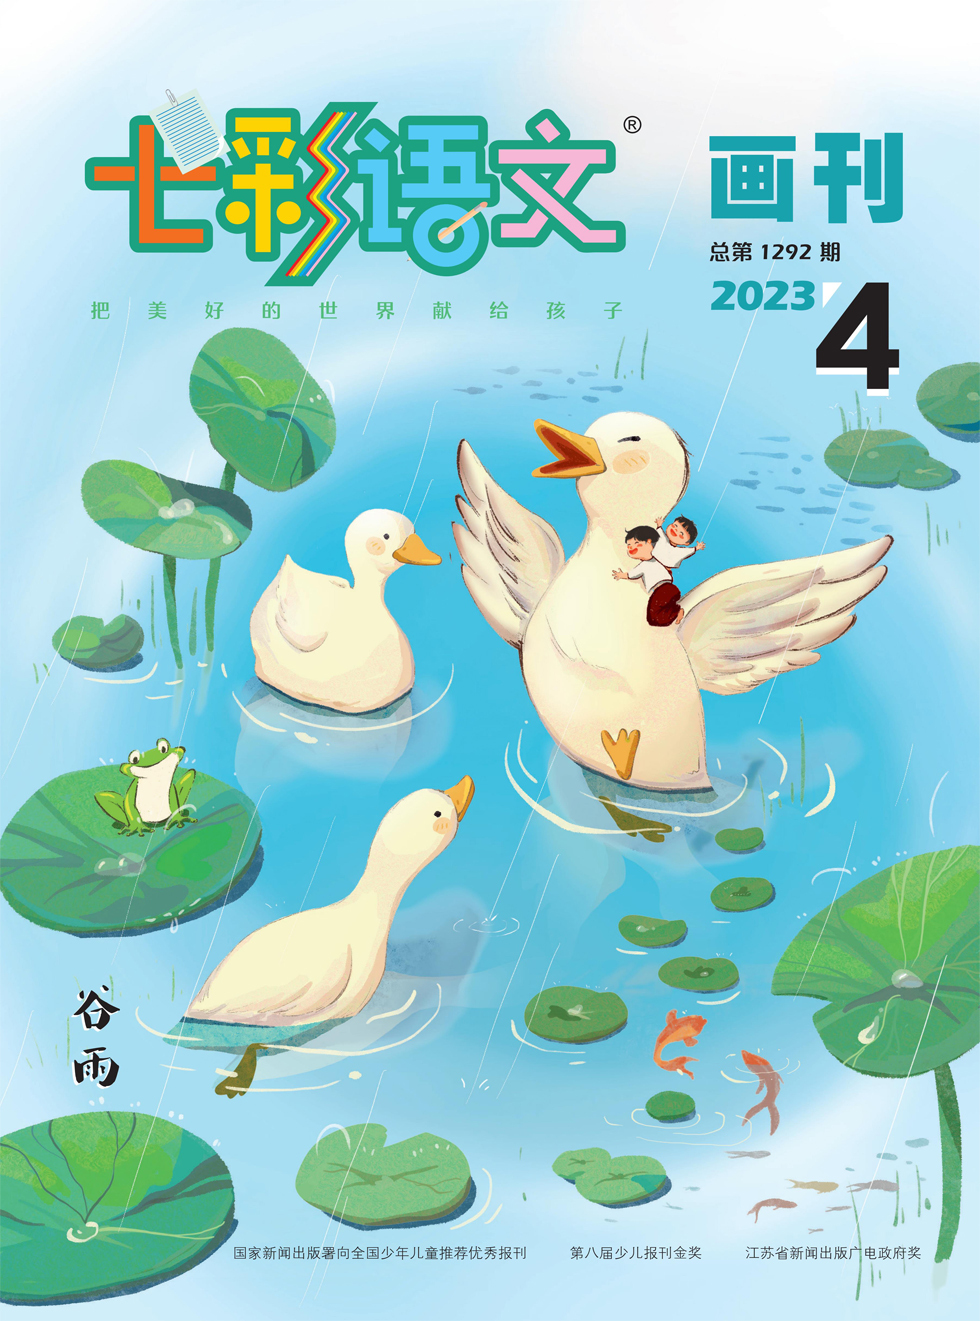 七彩语文·画刊杂志封面